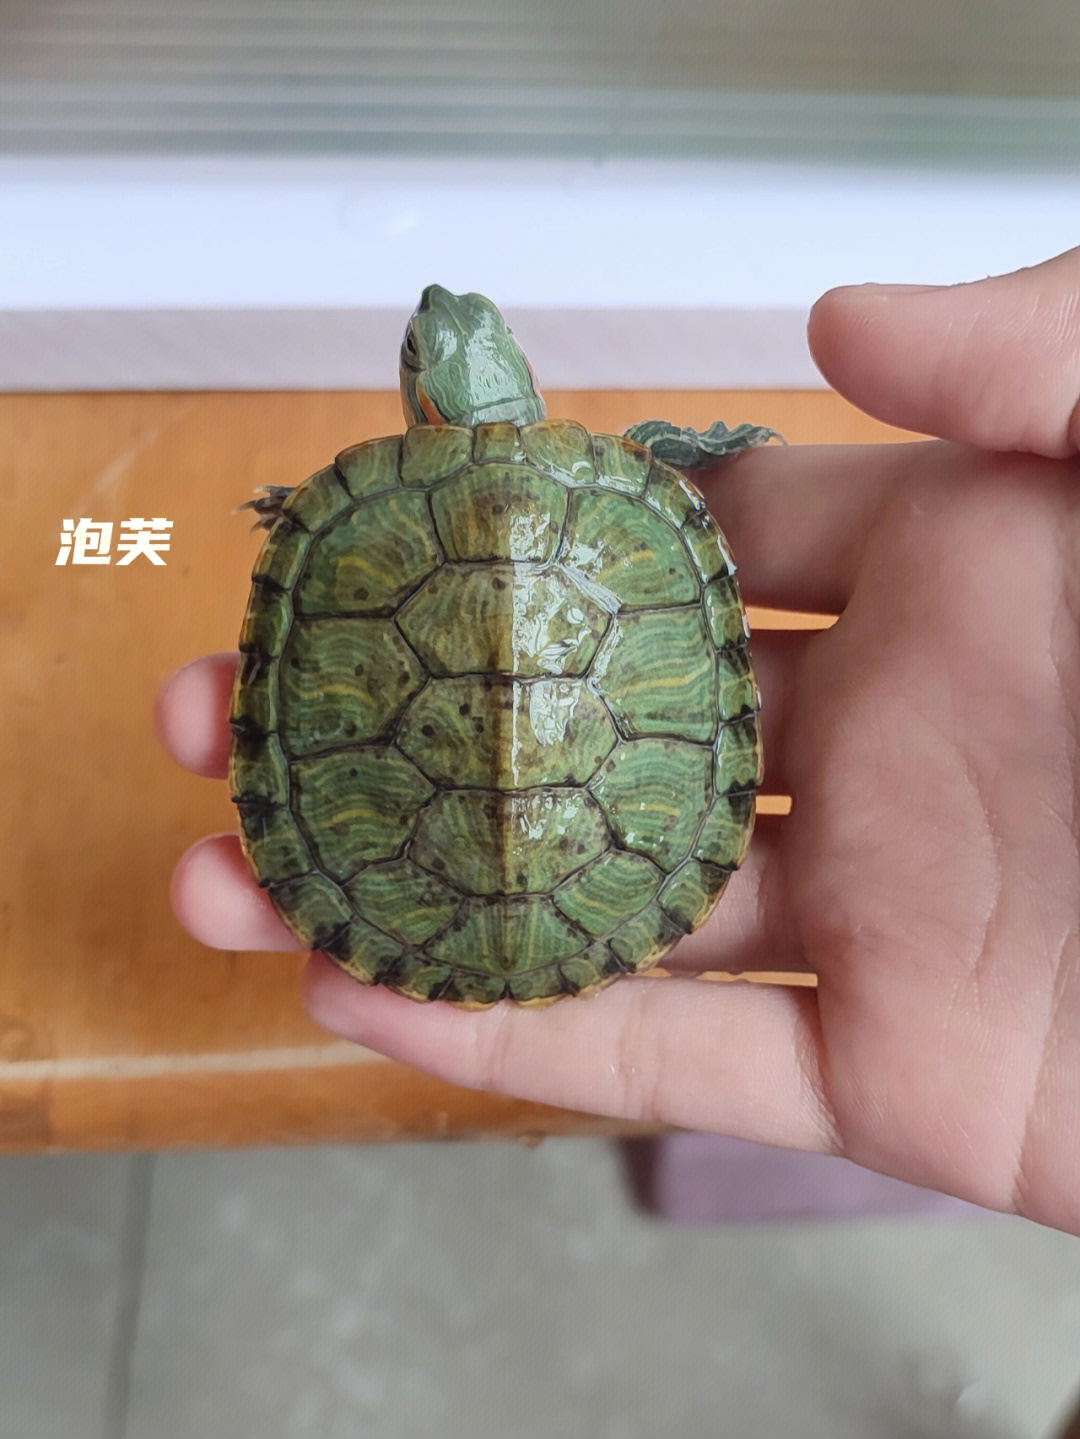 巴西龟能活多久寿命图片